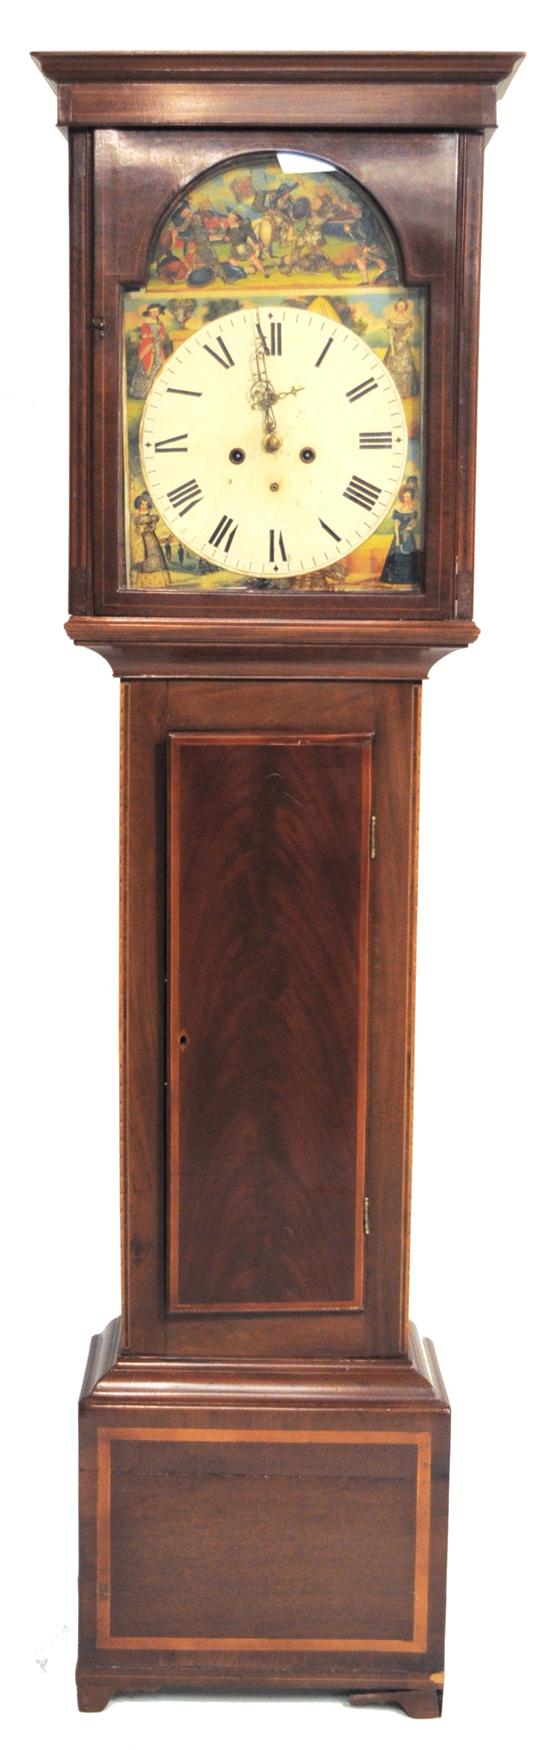 Scottish tall clock mahogany  10ec8b